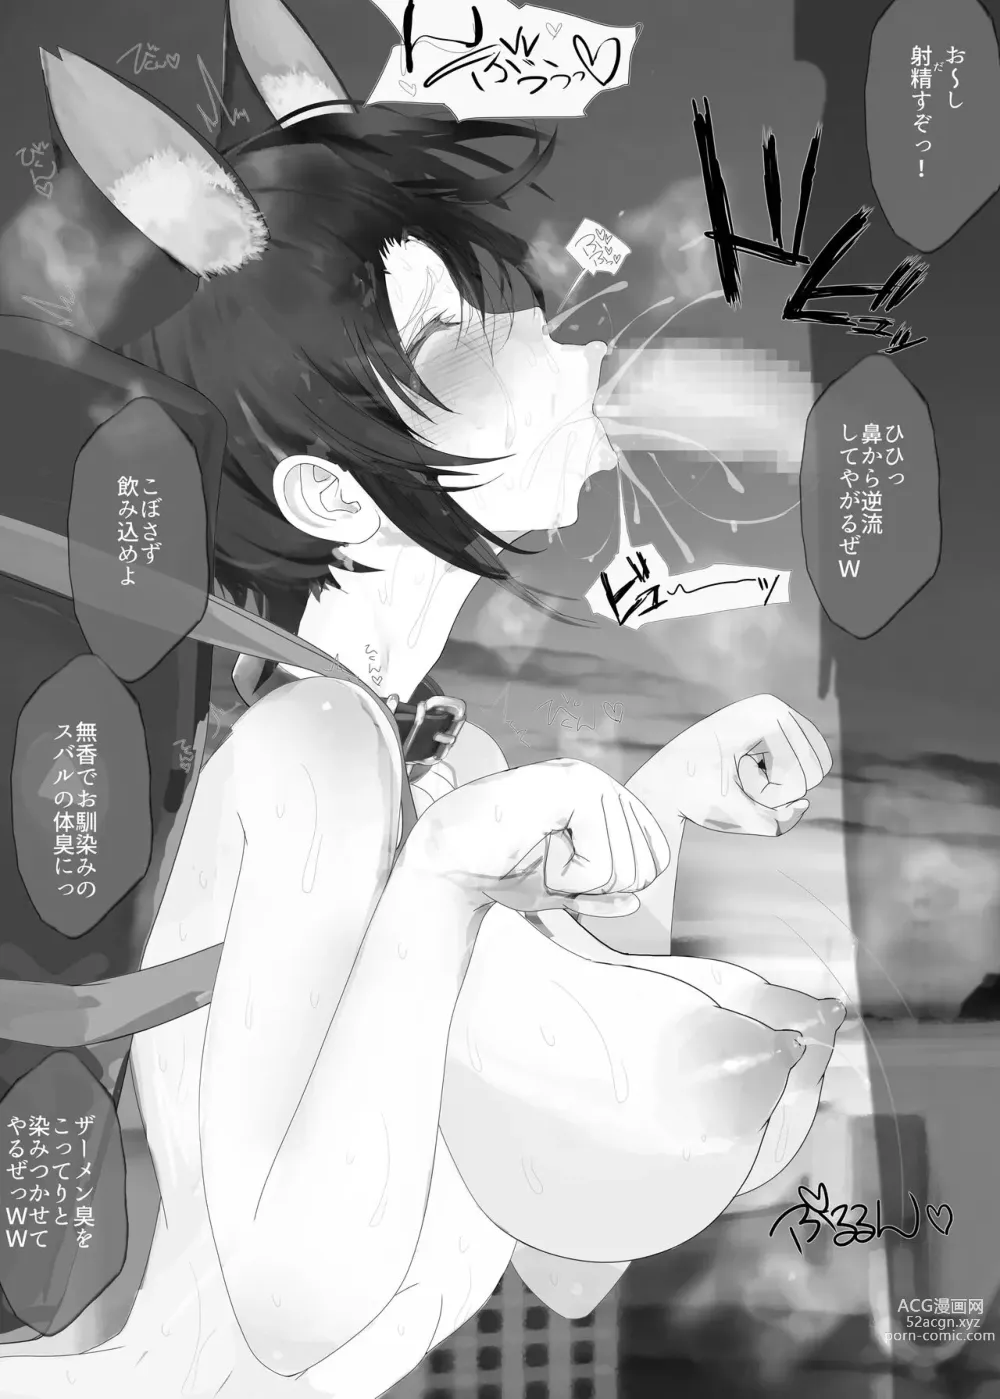 Page 8 of doujinshi Alternative End - Game no Jikan Dorobou Sakusen de Mirai Jikanjiku Subaru ni Sukuidaseru Saimin Multiverse